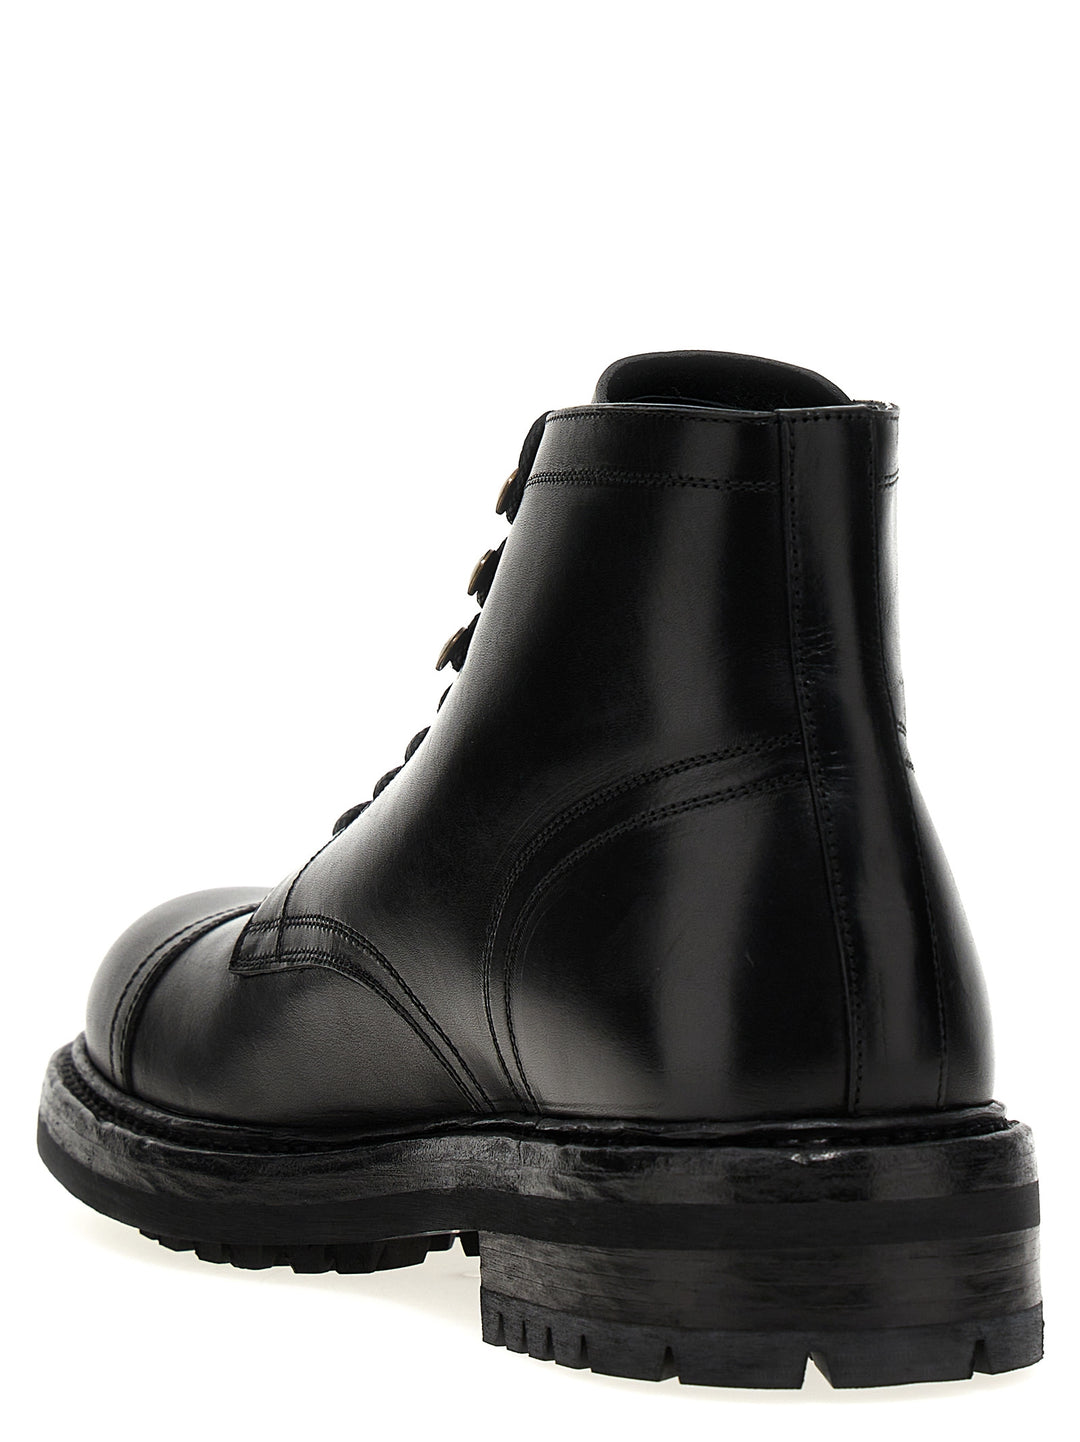 Leather Ankle Boots Stivali E Stivaletti Nero